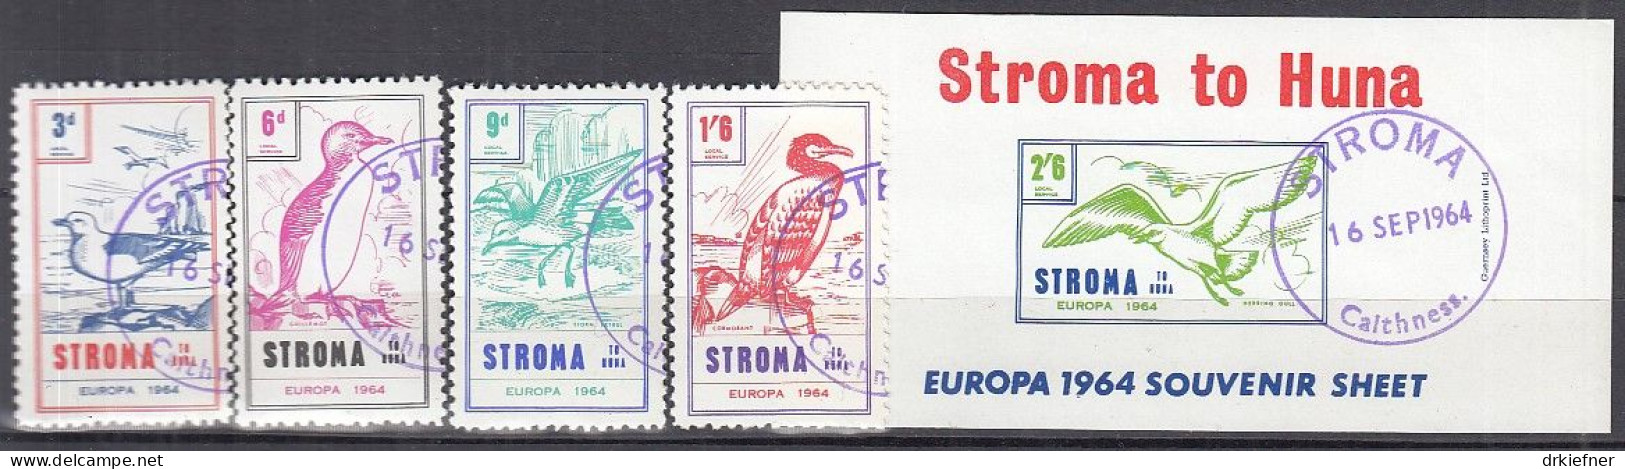 INSEL STROMA (Schottland), Nichtamtl. Briefmarken, Stroma To Huna, Block + 4 Marken, Gestempelt, Europa 1964, Vögel - Scotland